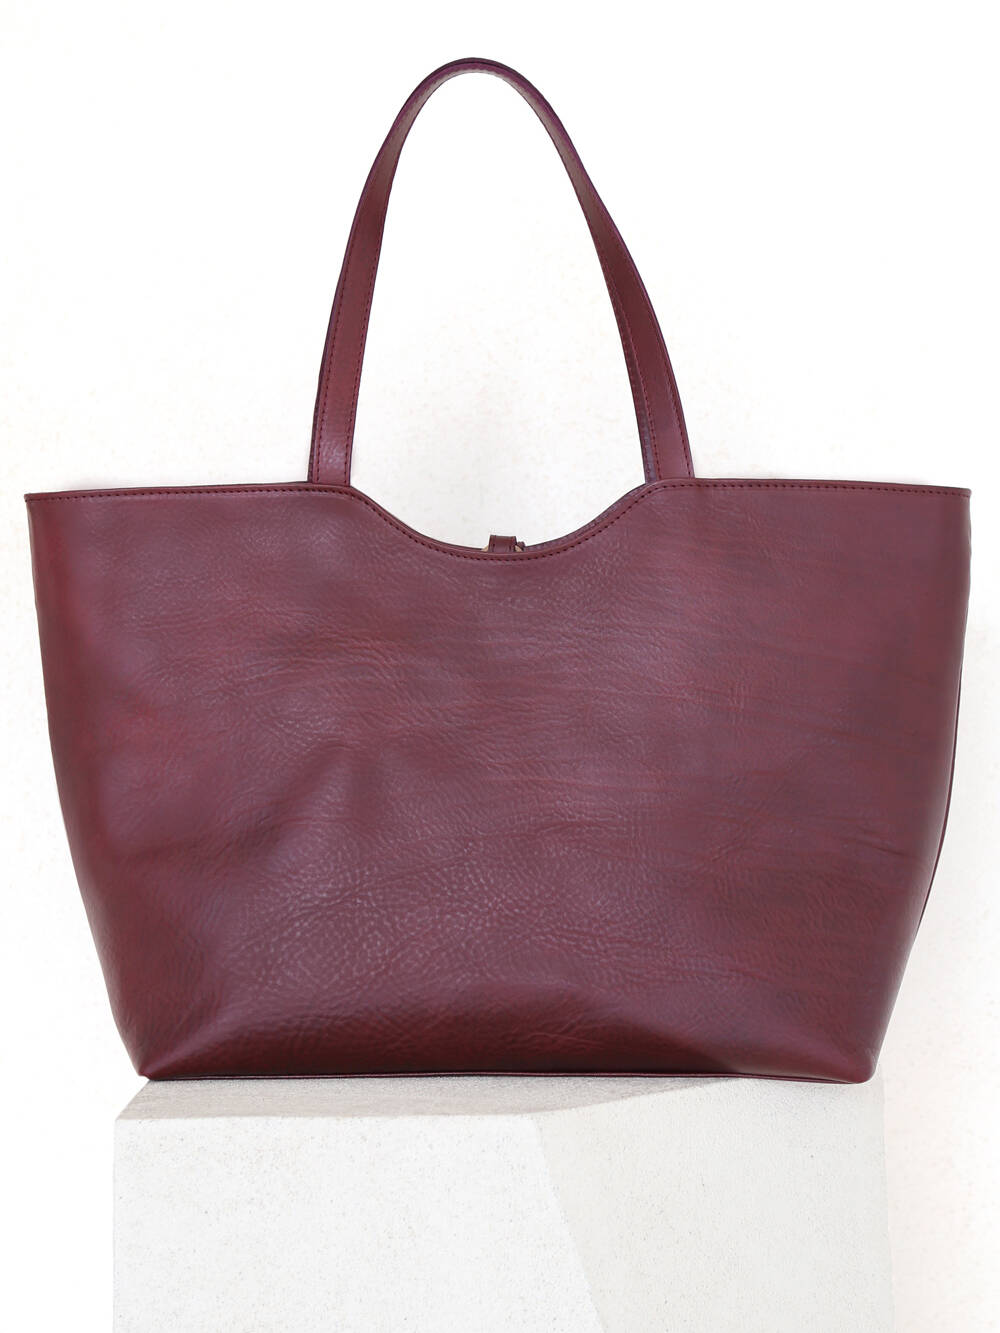 Shop - Corîu - Leather Bags